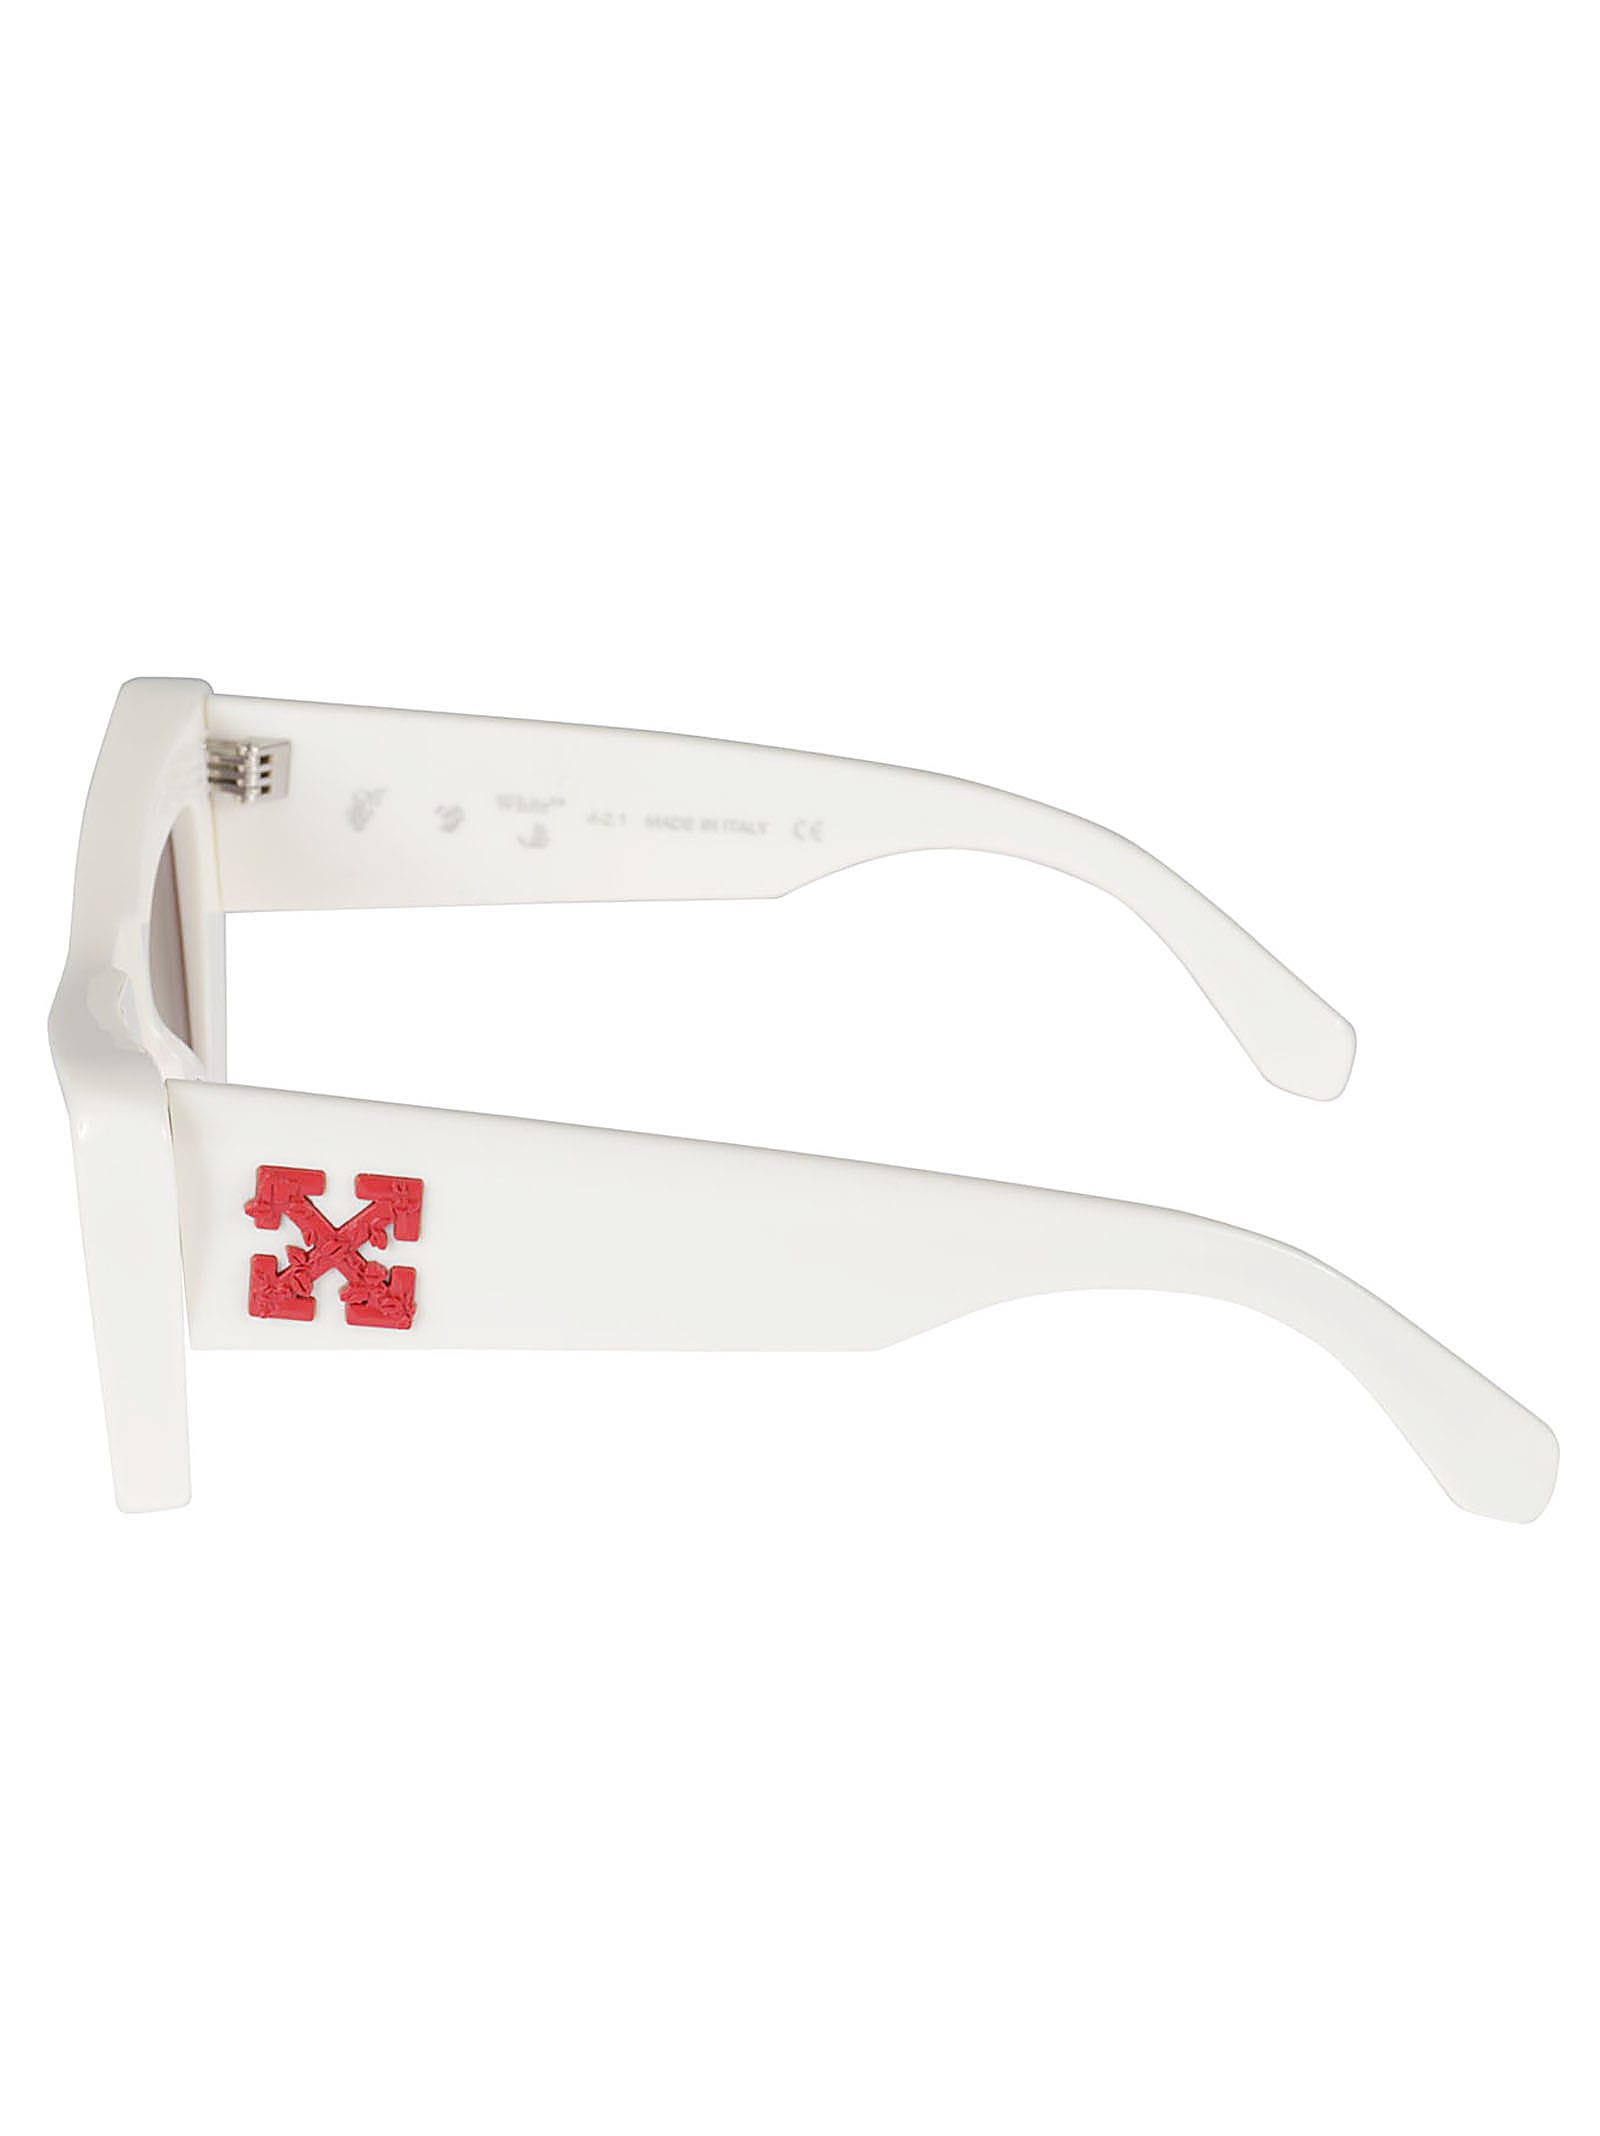 Shop Off-white Accra Sunglasses In White